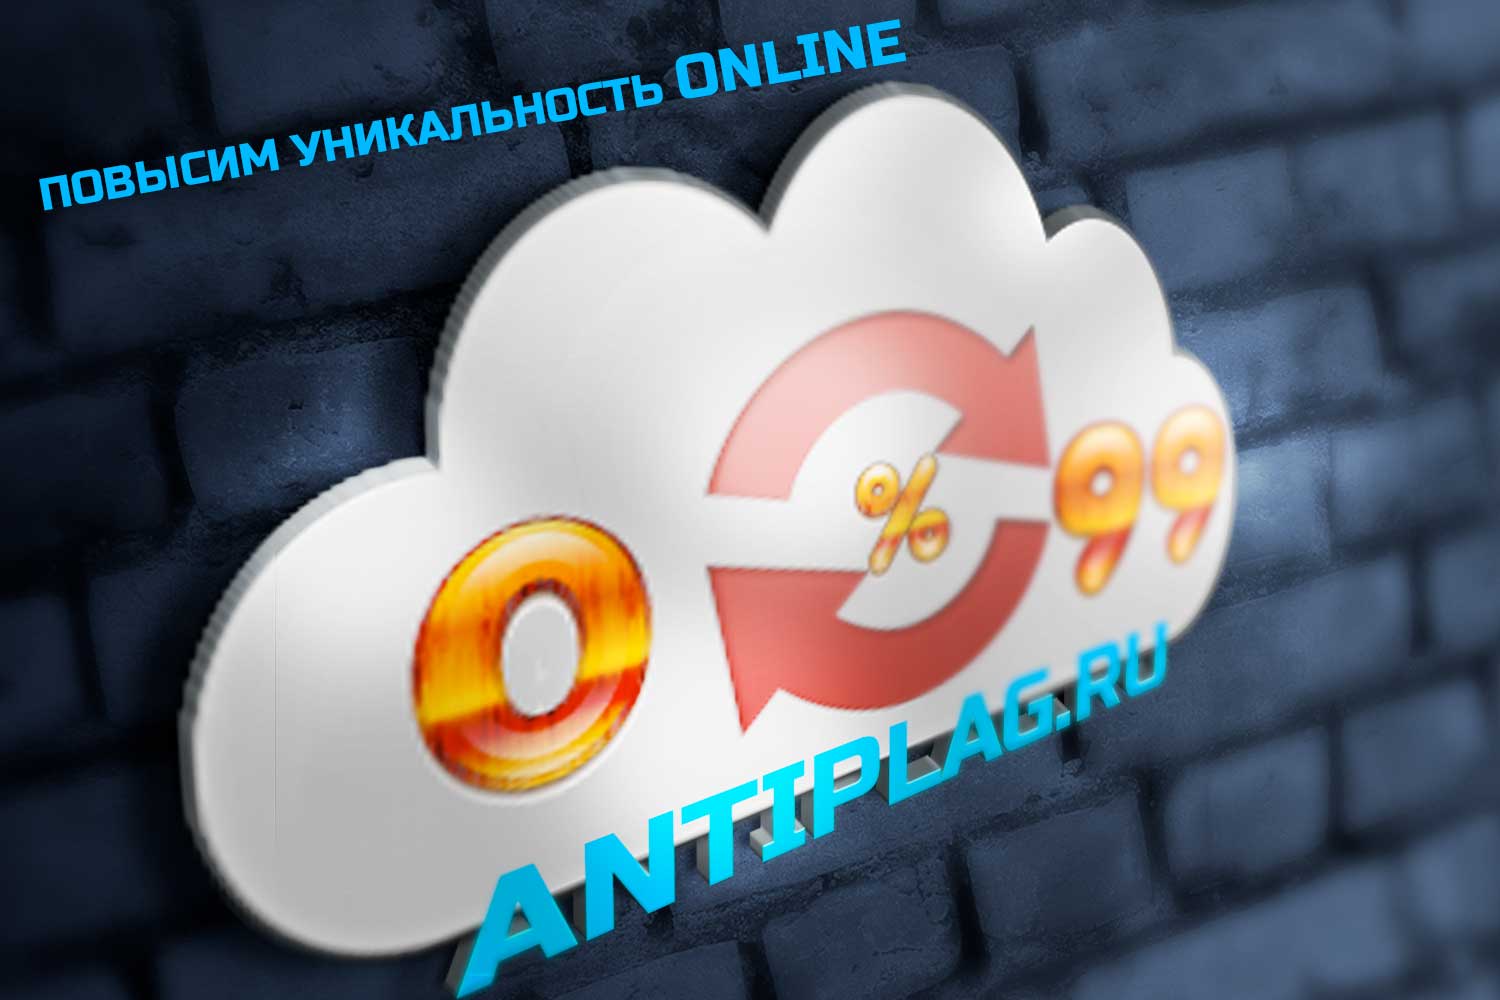 Онлайн проверка на антиплагиат на antiplag.ru